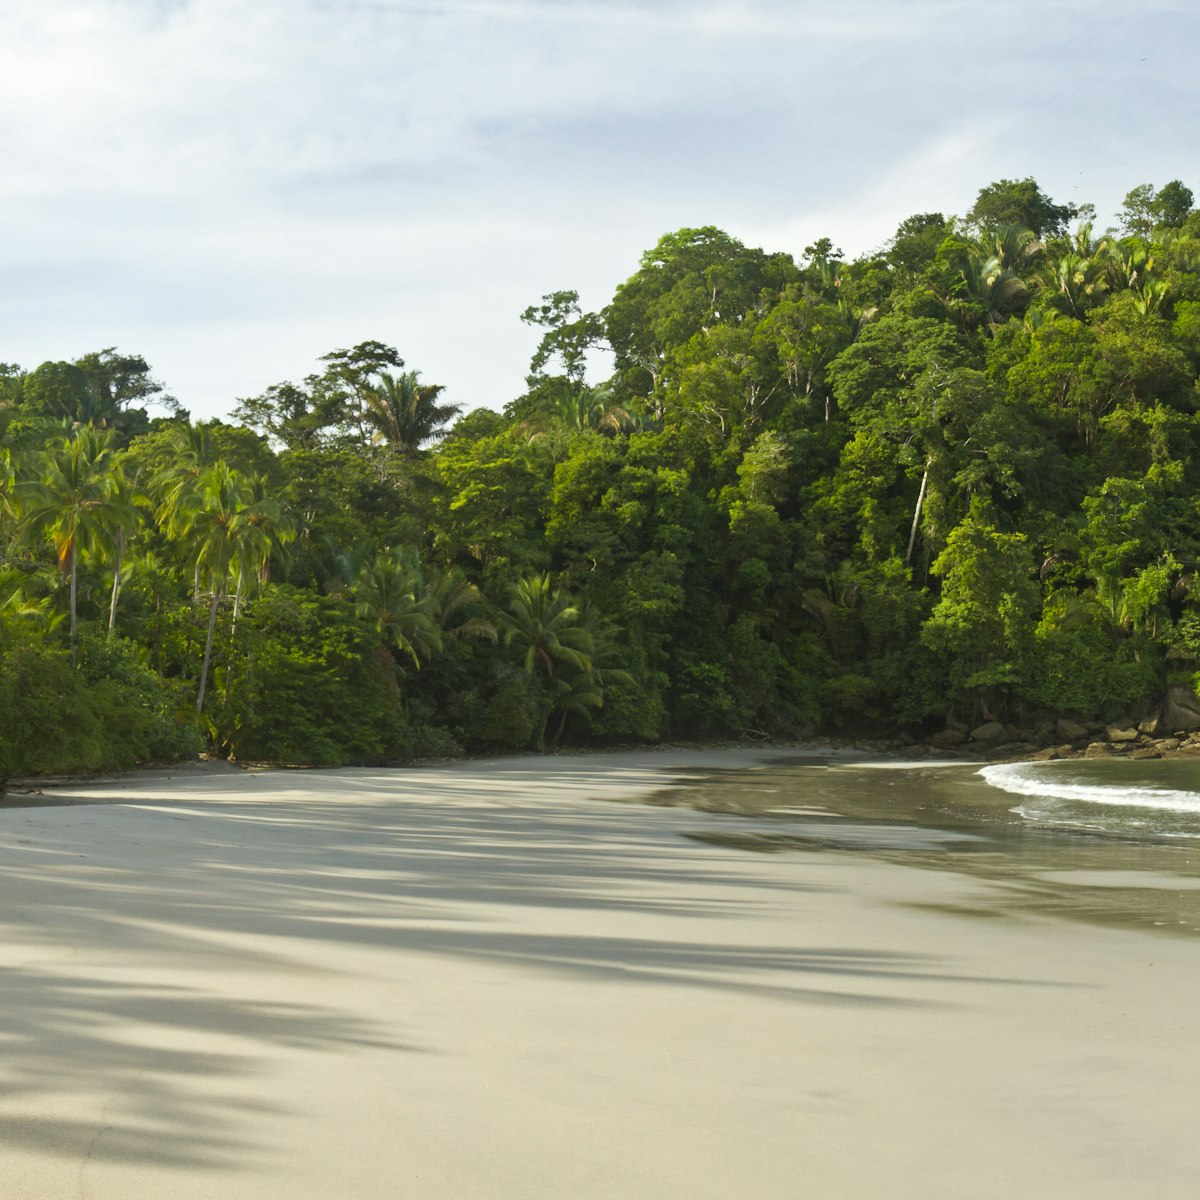 Playa Espadilla Sur & Punta Catedral in Manuel Antonio National Park, Costa Rica
